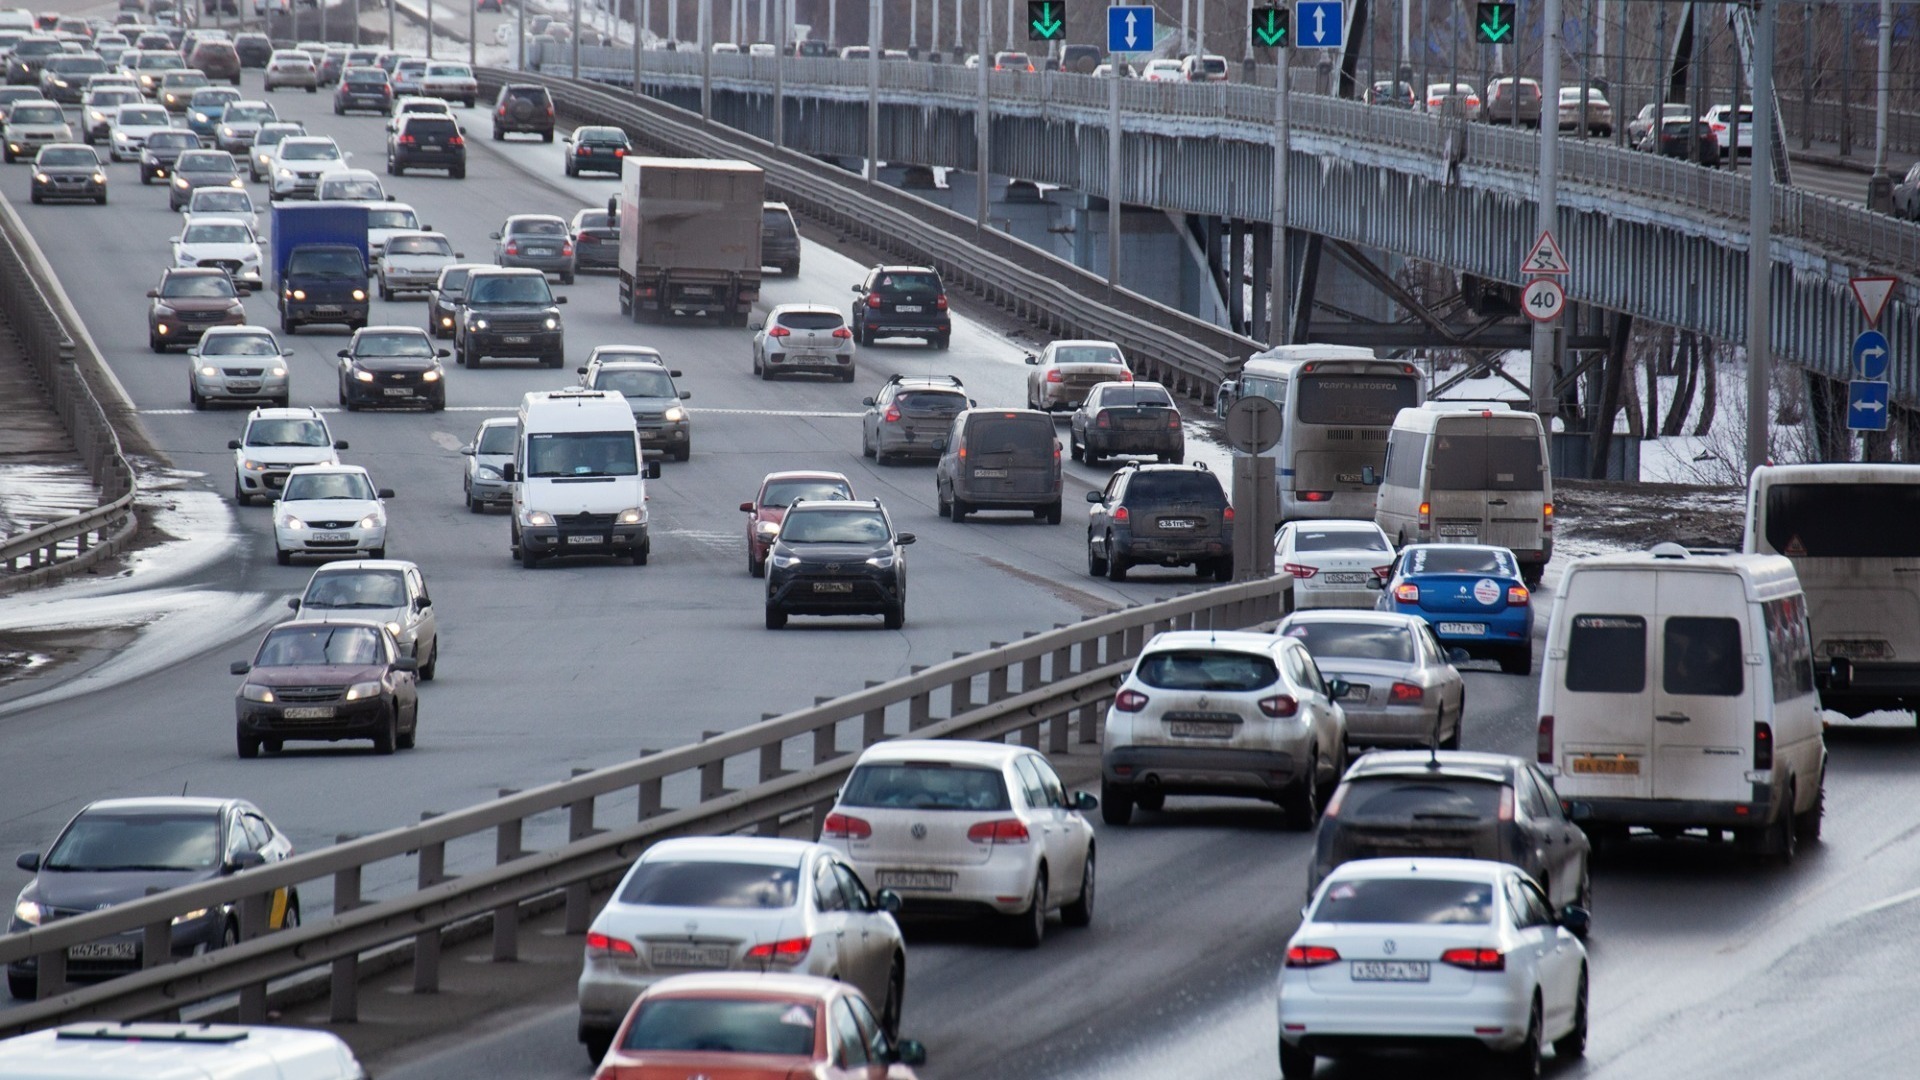 Движение на мосту встало из-за аварии с фурой во Владивостоке